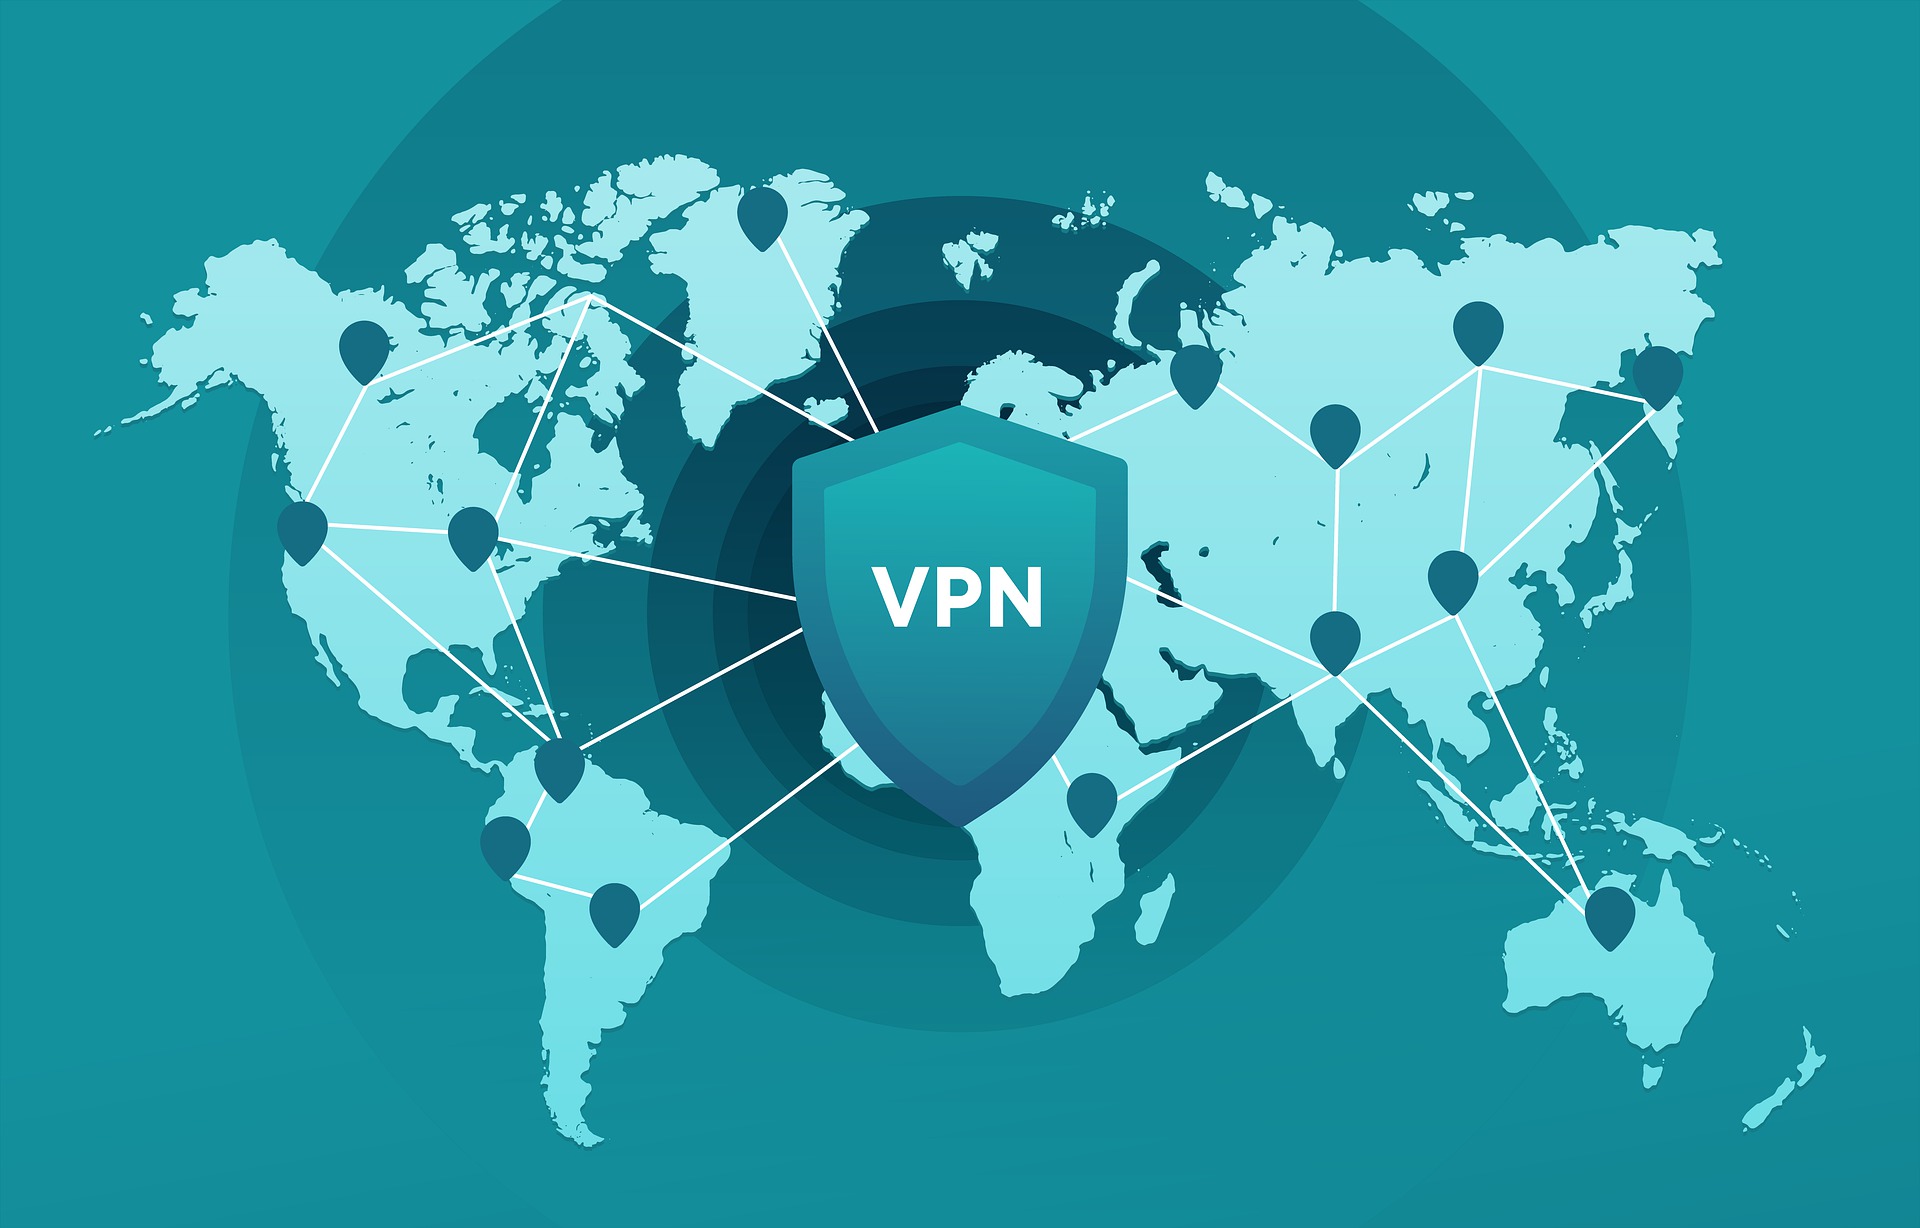 You are currently viewing Ai nevoie de un VPN atunci cand calatoresti? Am gasit solutia perfecta cu trial gratuit.